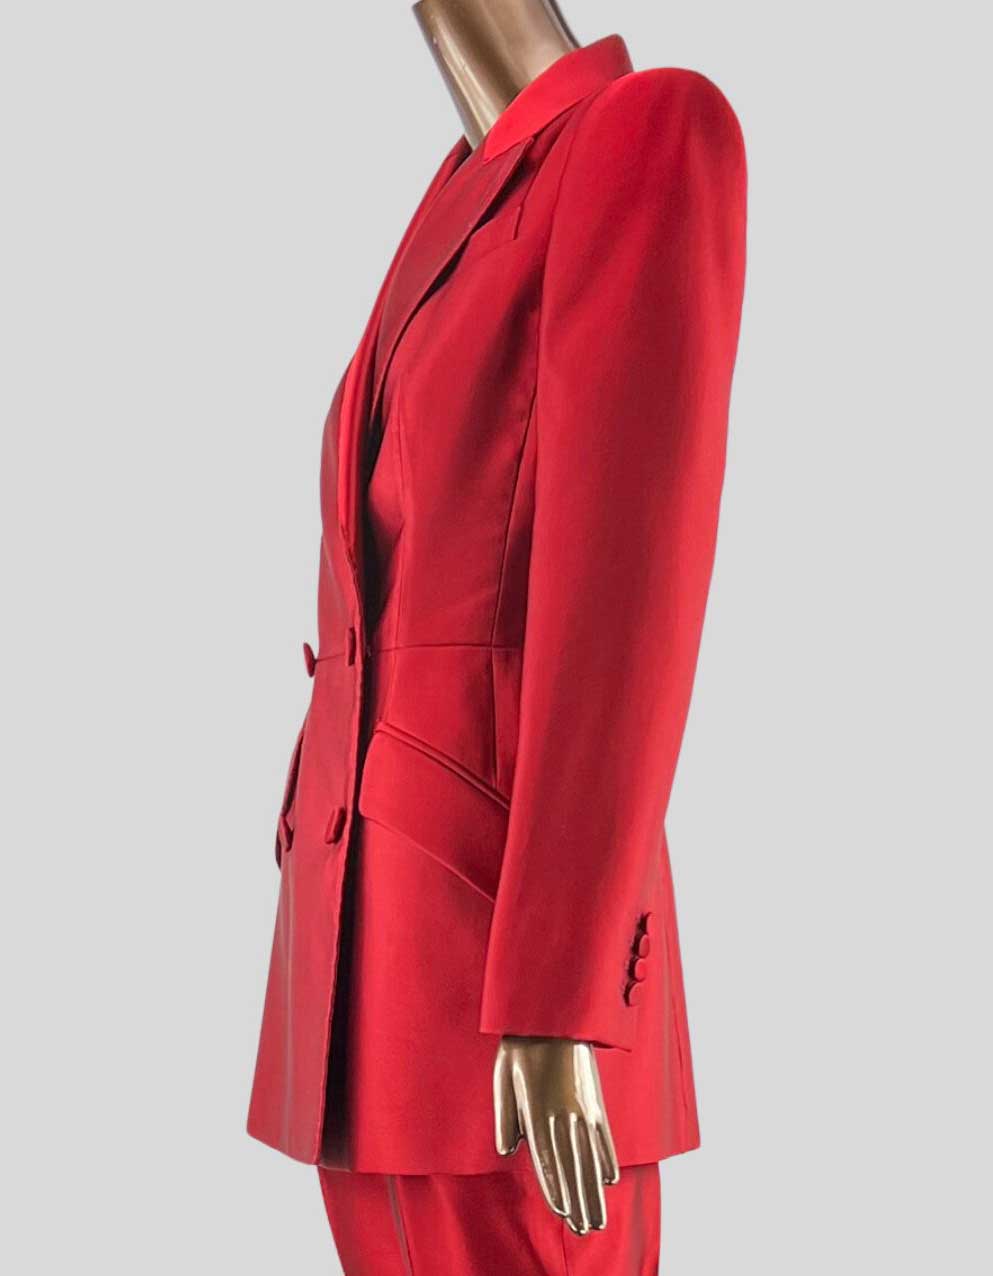 Alexander McQueen double breasted silk blazer in Carnelian Red - 42 IT | 6 US